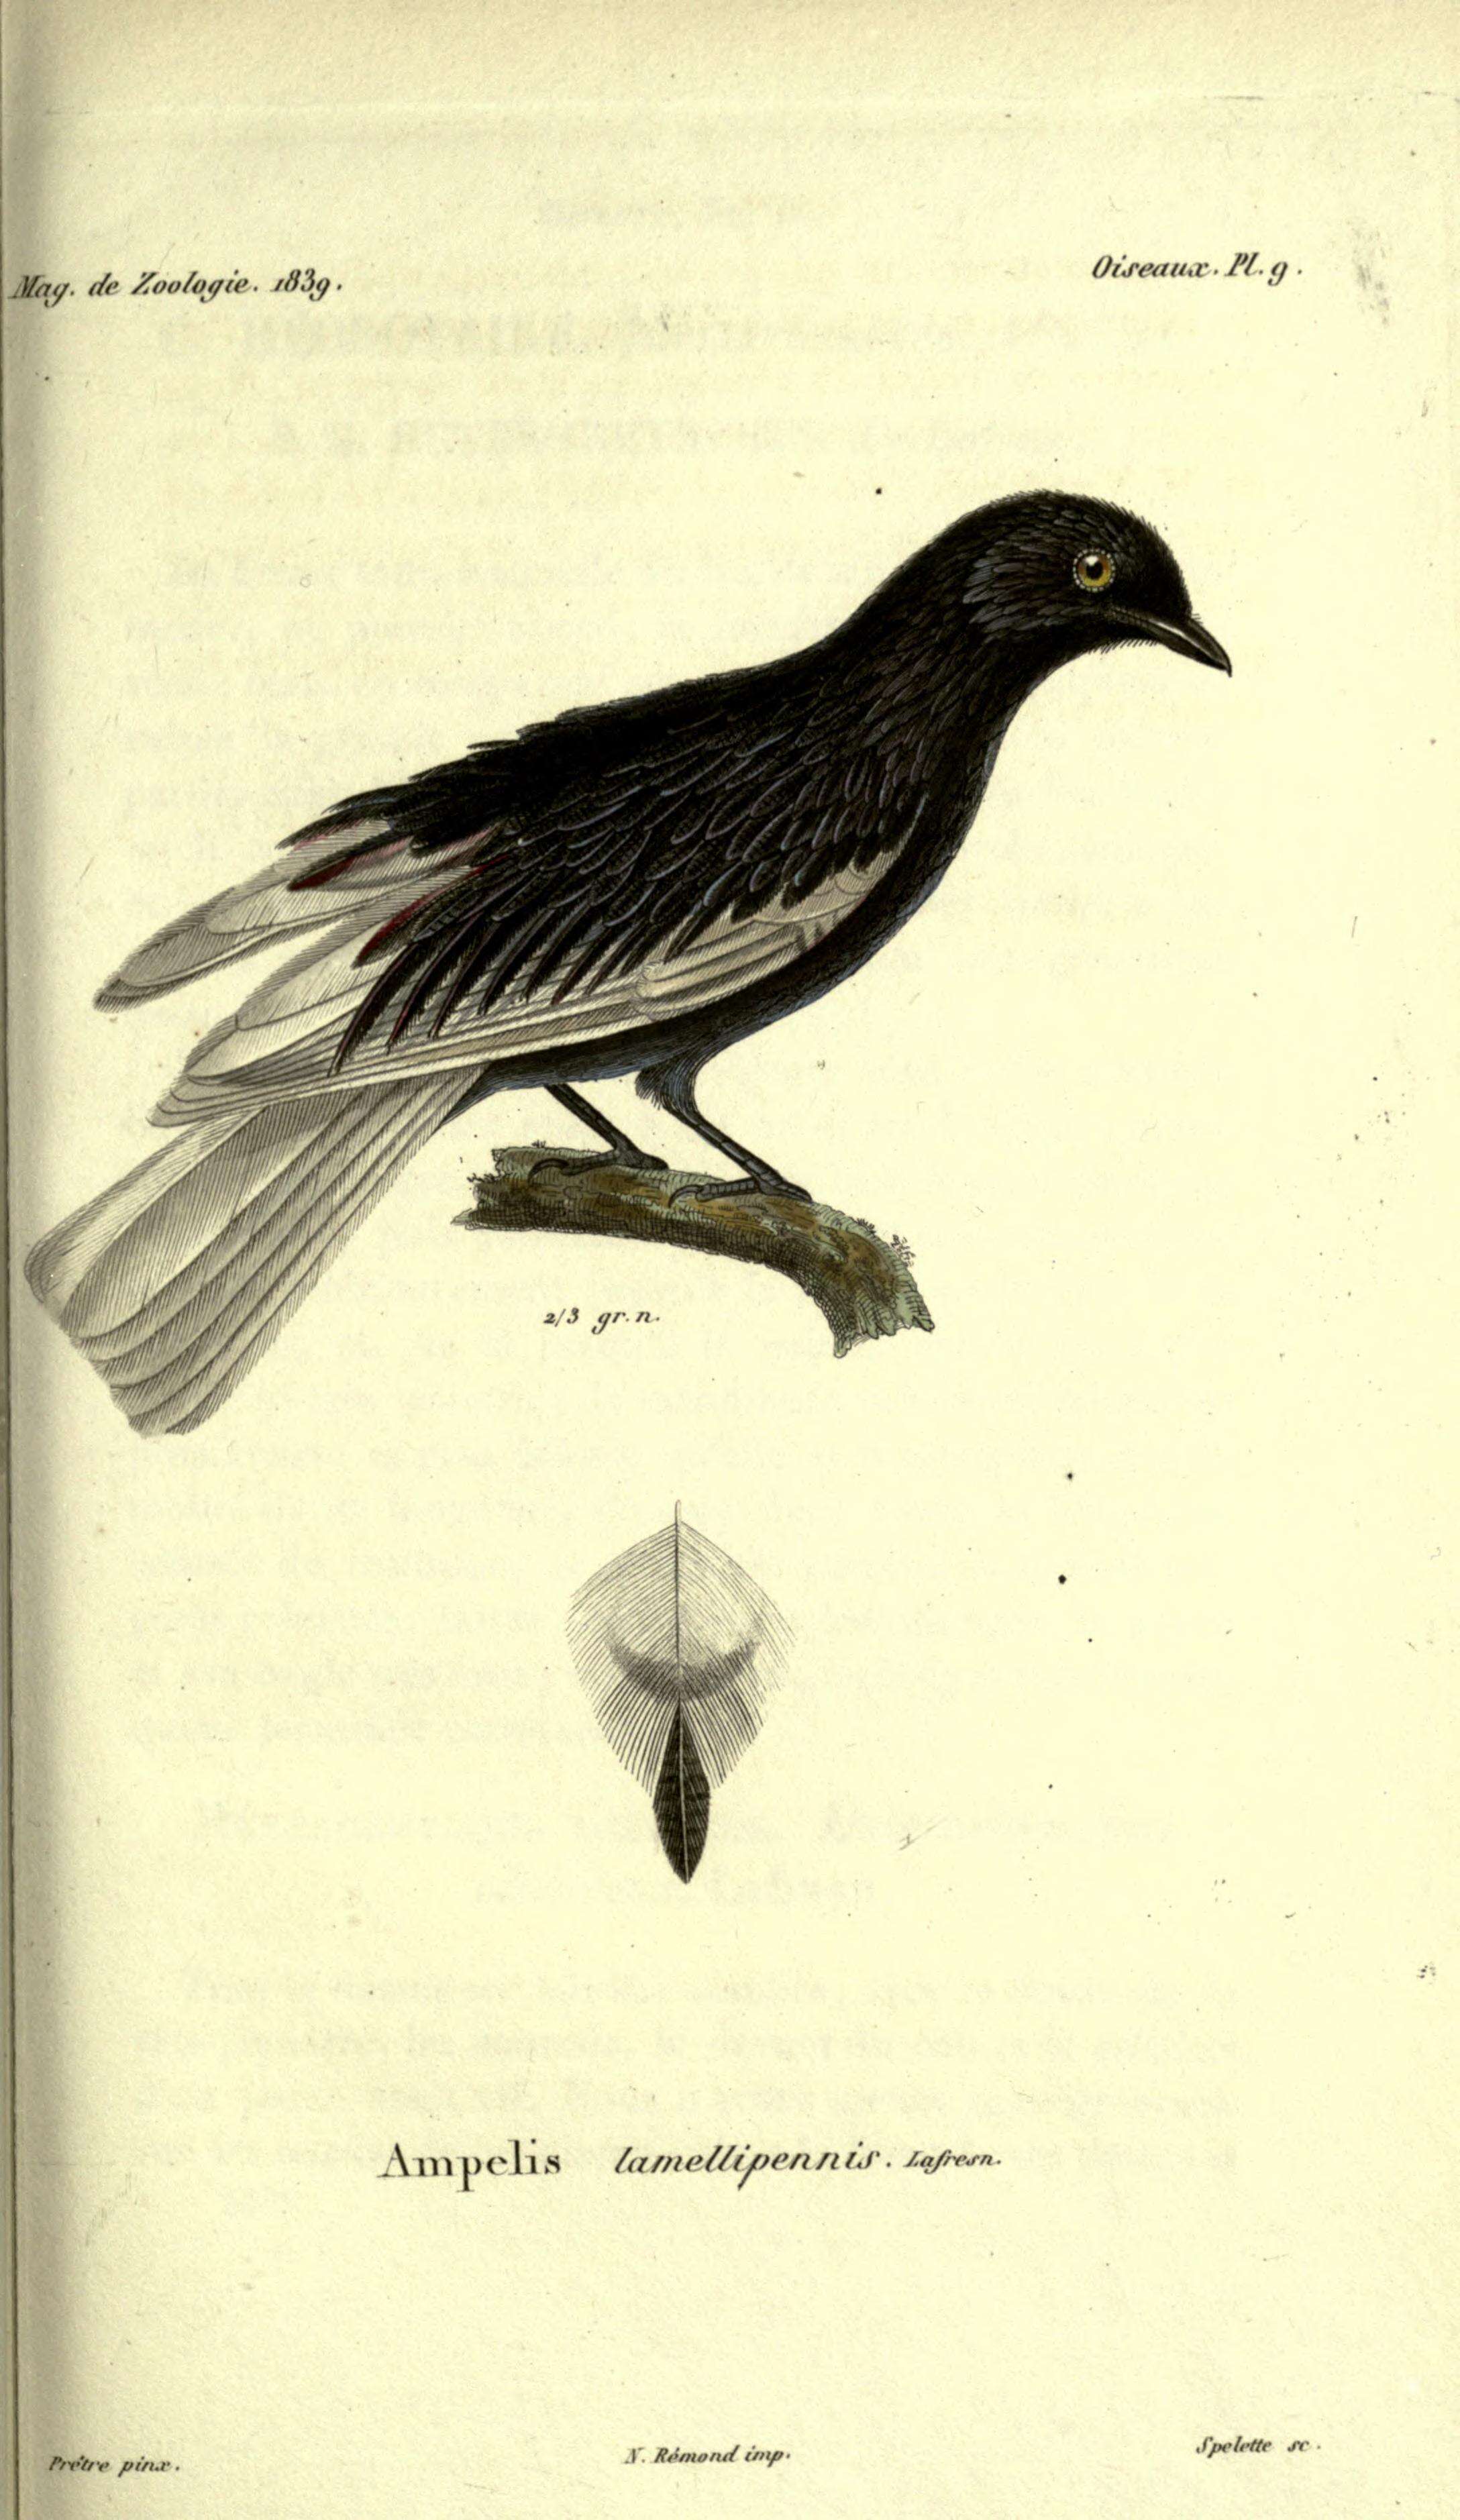 Image of White-tailed Cotinga